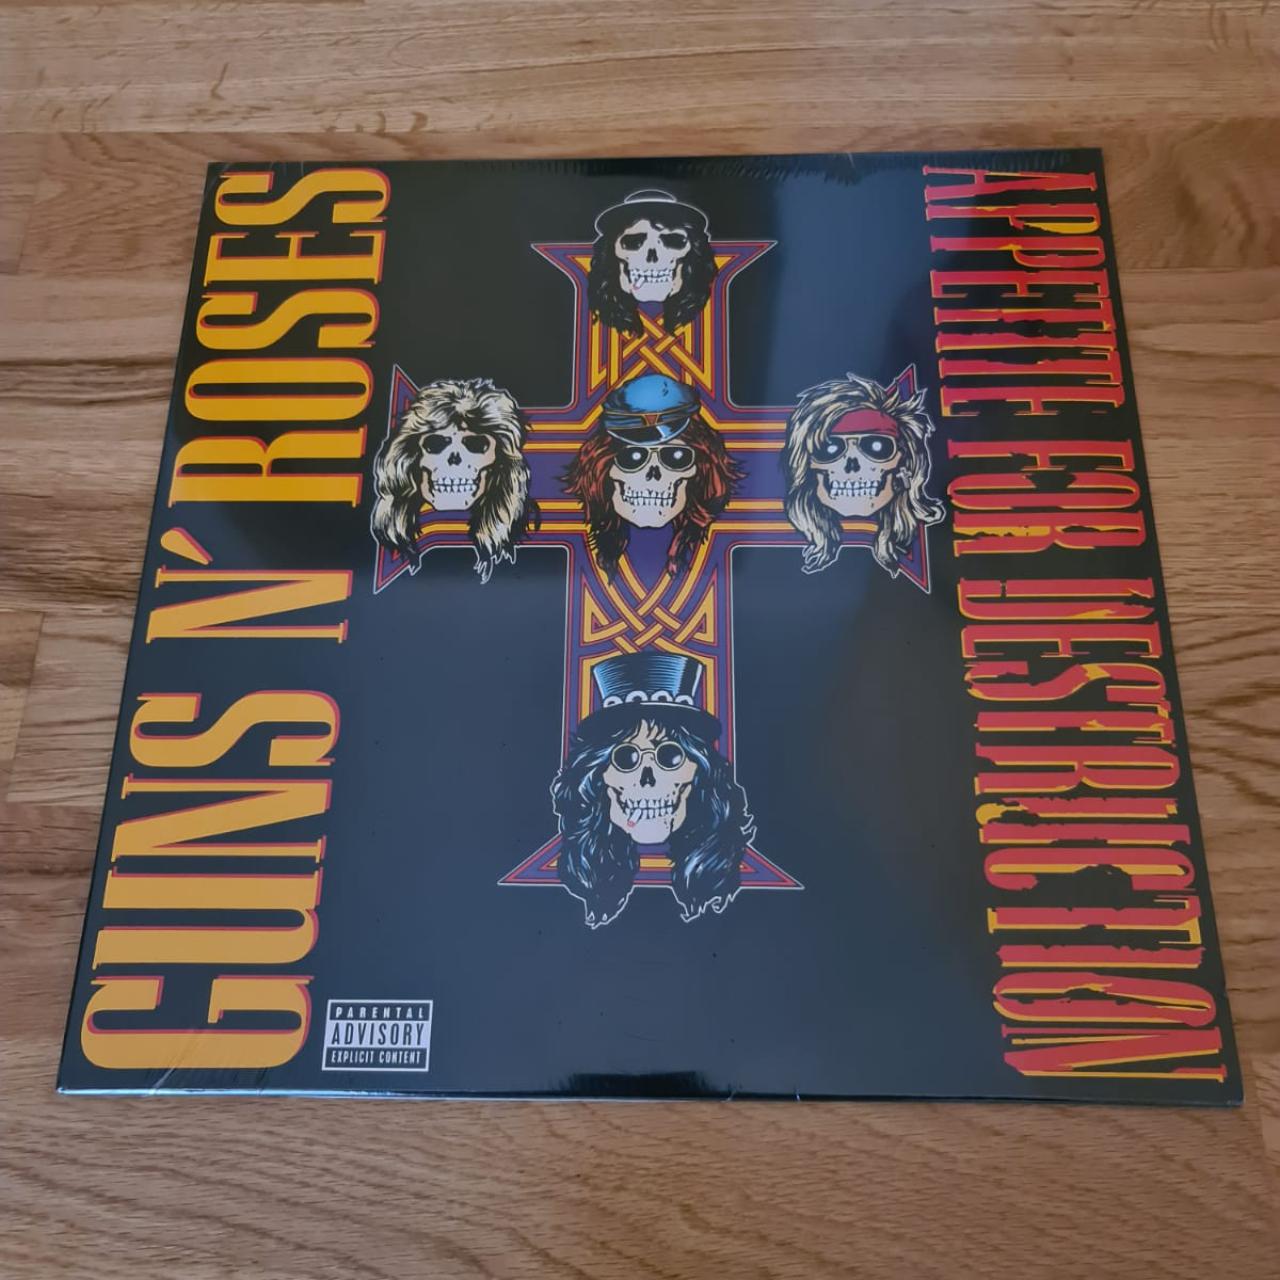 Guns N' Roses: Appetite For Destruction (180g) Vinyl LP —